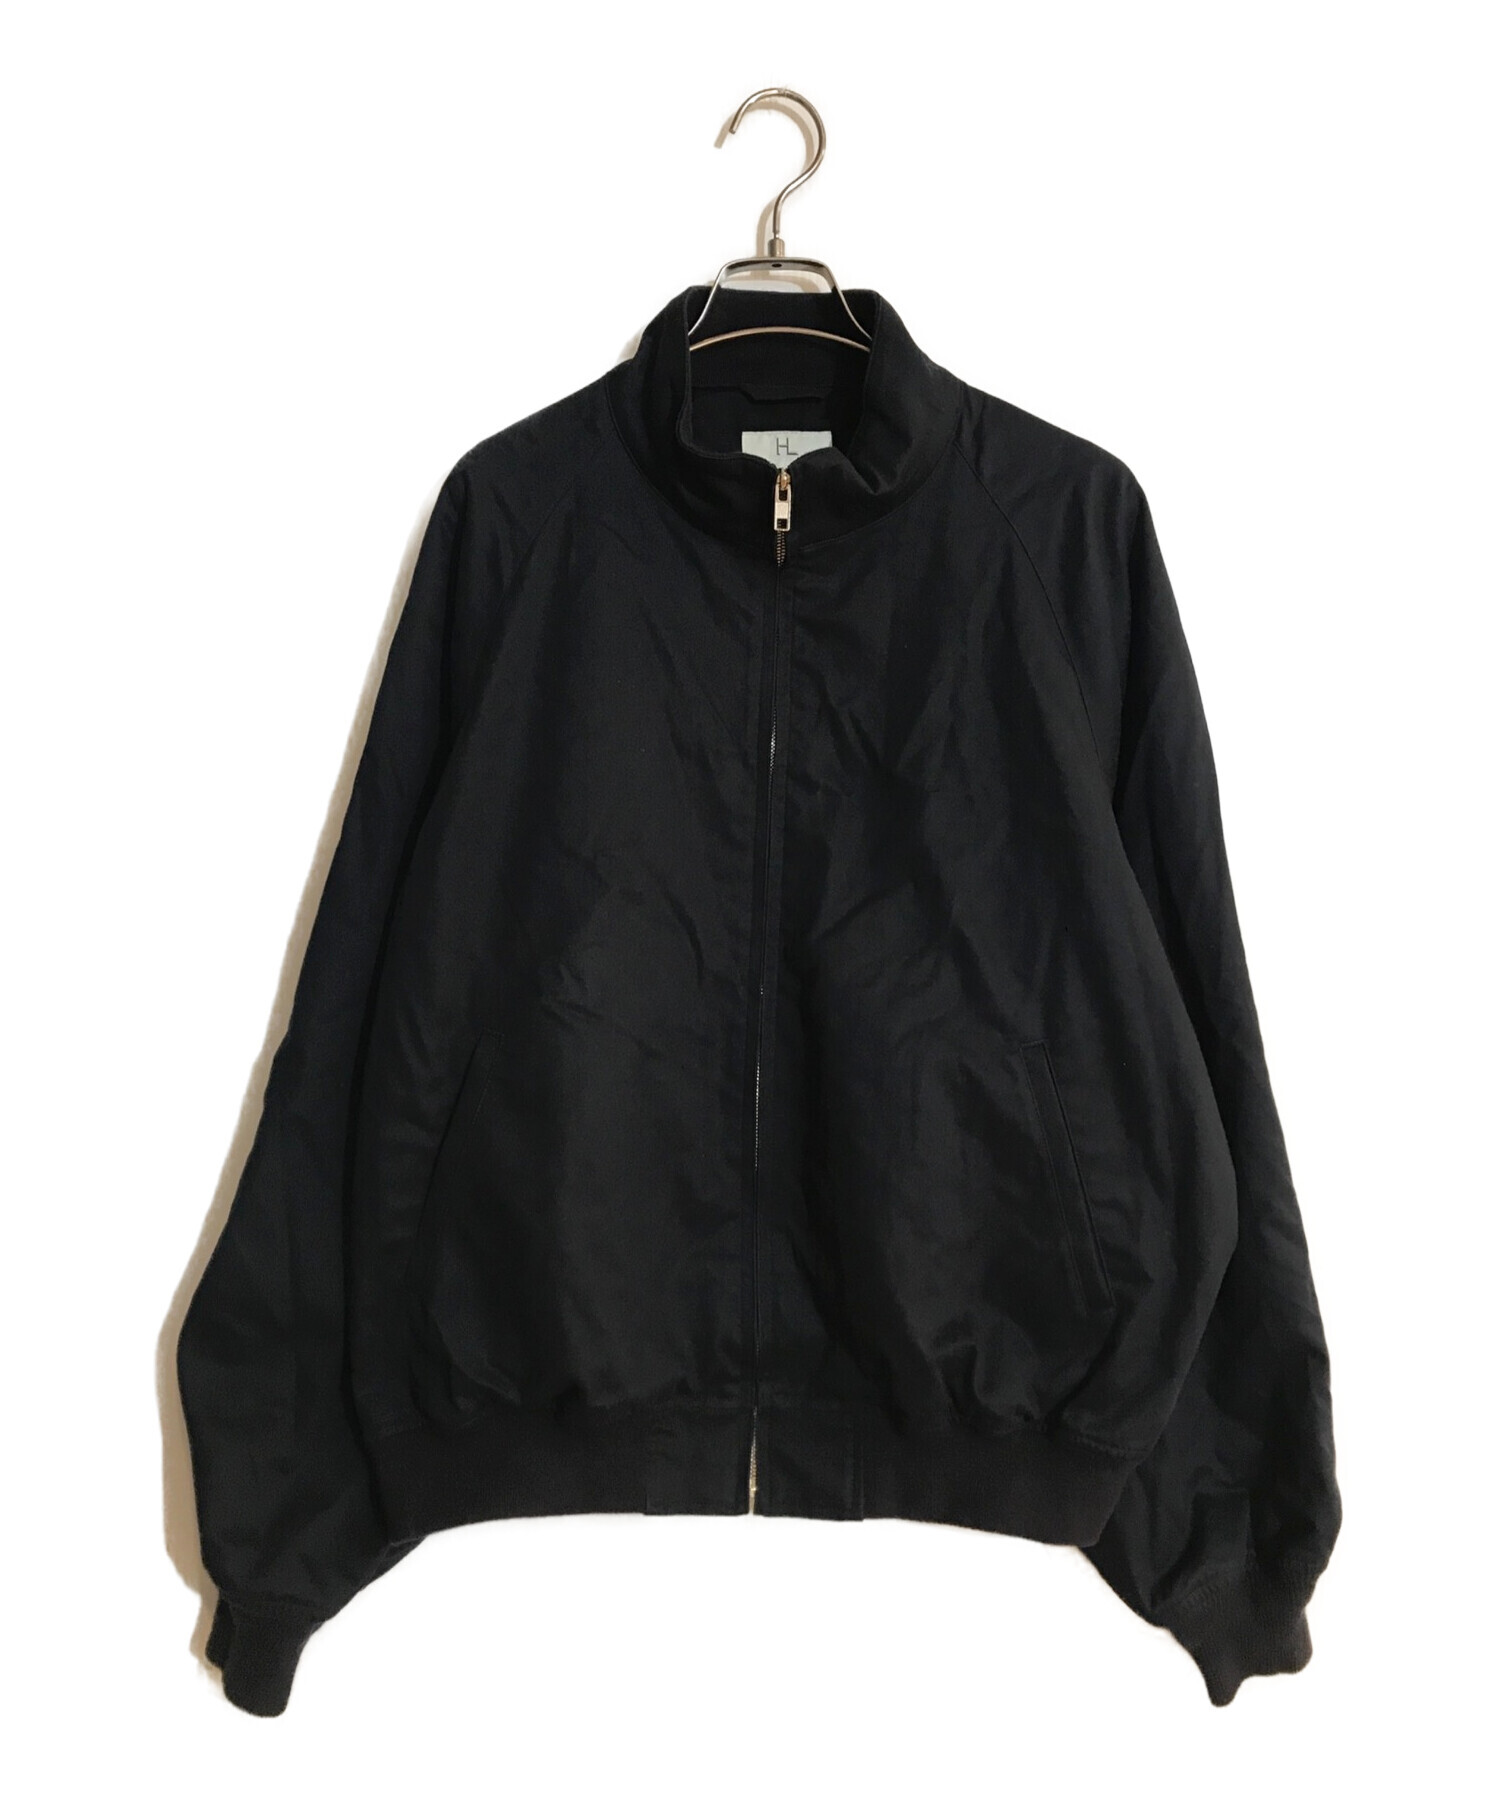 【新品】HERILL Chino Weekend jacket サイズ3